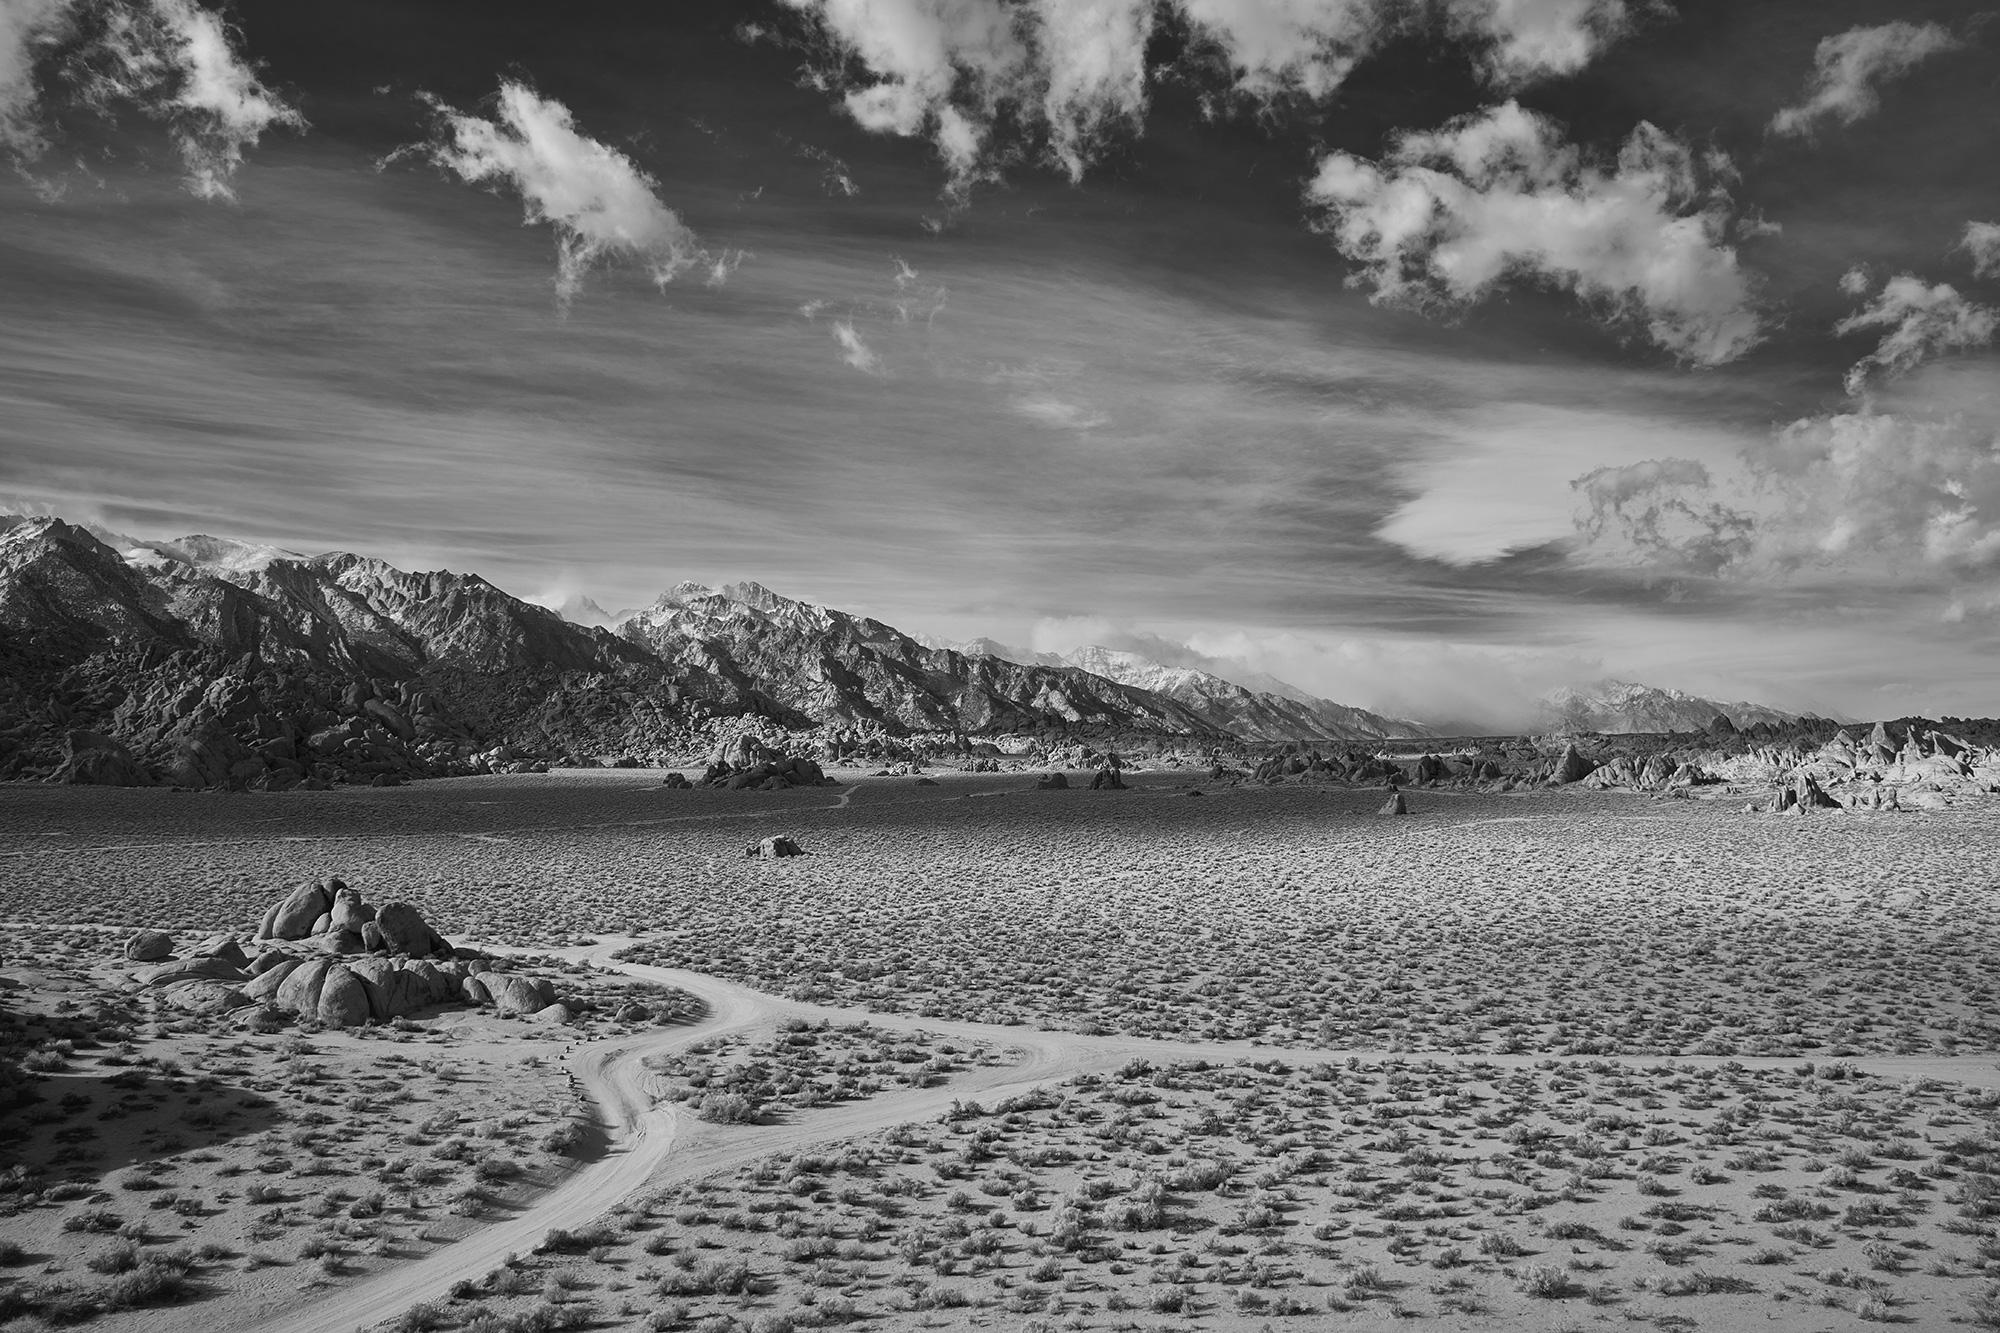 Desert Crossing – großformatiges Schwarz-Weiß-Foto einer dramatischen Wüstenlandschaft